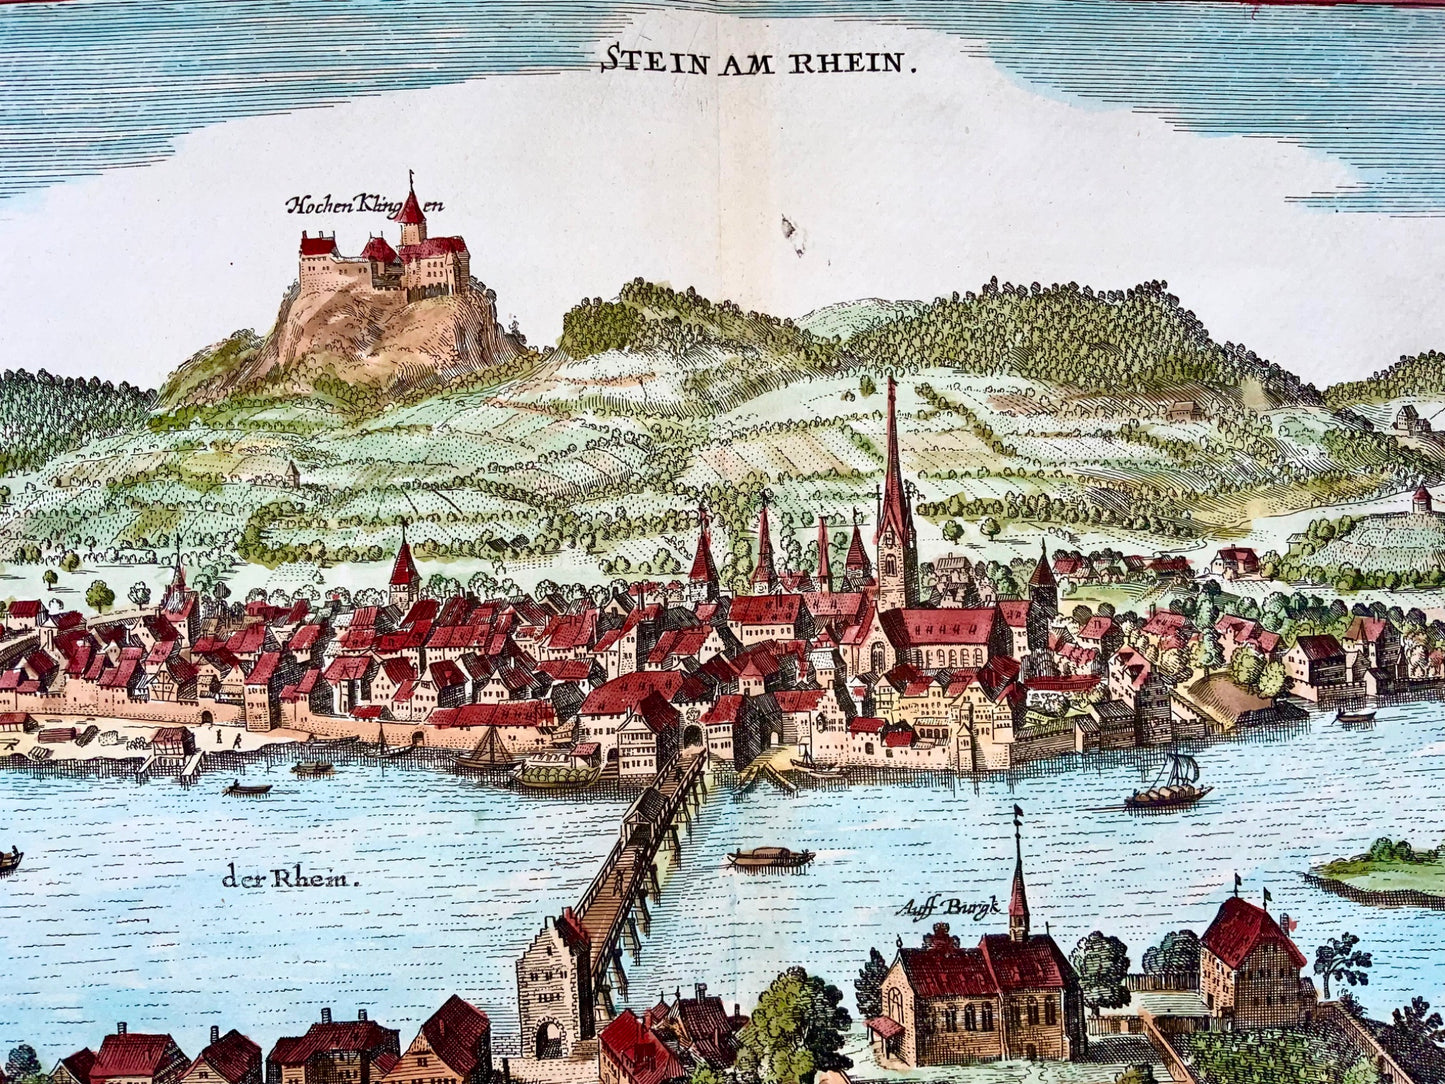 1654 Merian, Stein am Rhein, large double folio, Switzerland